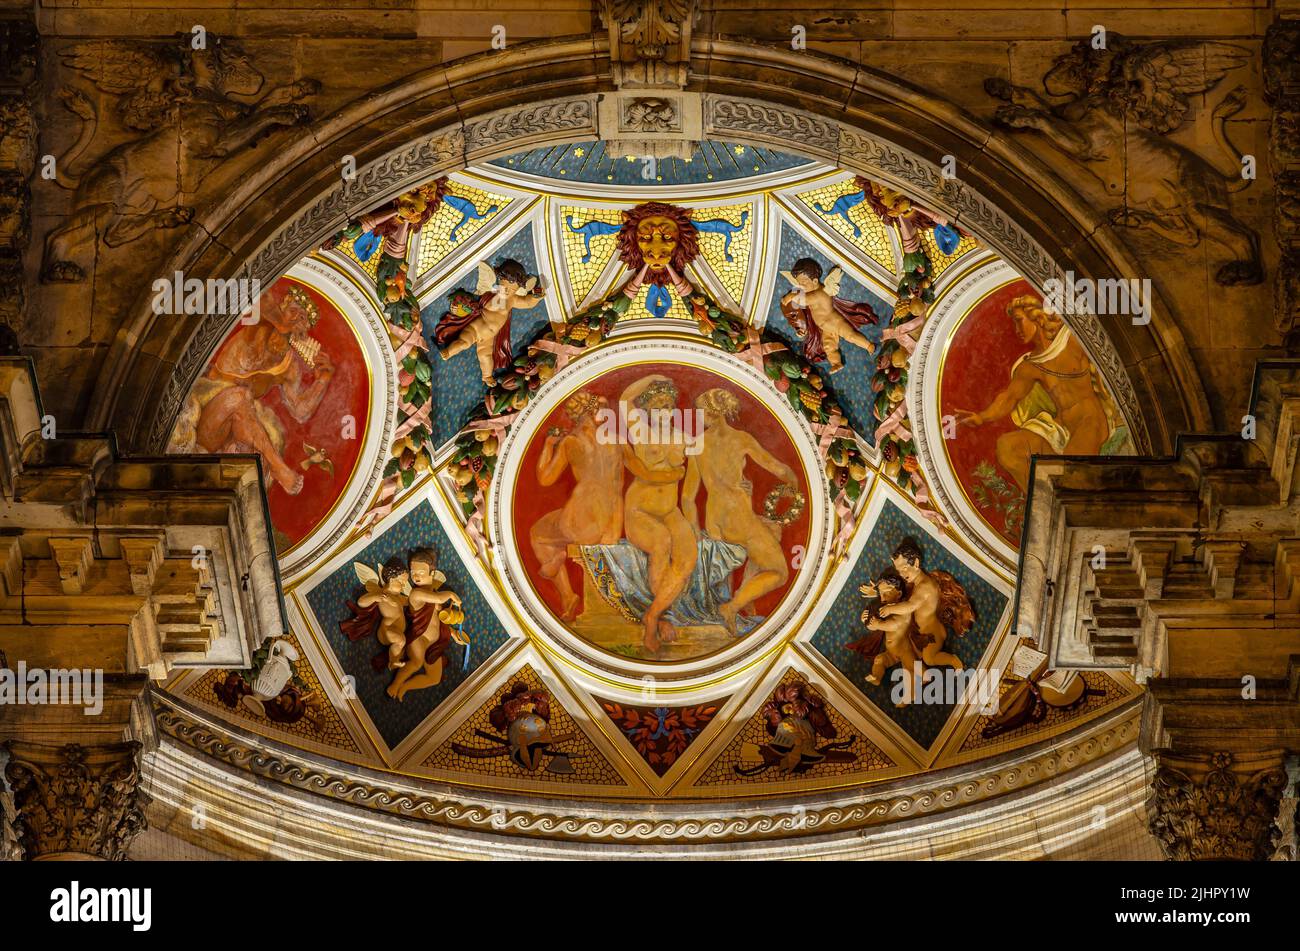 Semper Opera House Dresden, Sajonia, Alemania: Decoración artística de la cúpula de la exedra, incluyendo pinturas de techo de Paul Kießling. Foto de stock